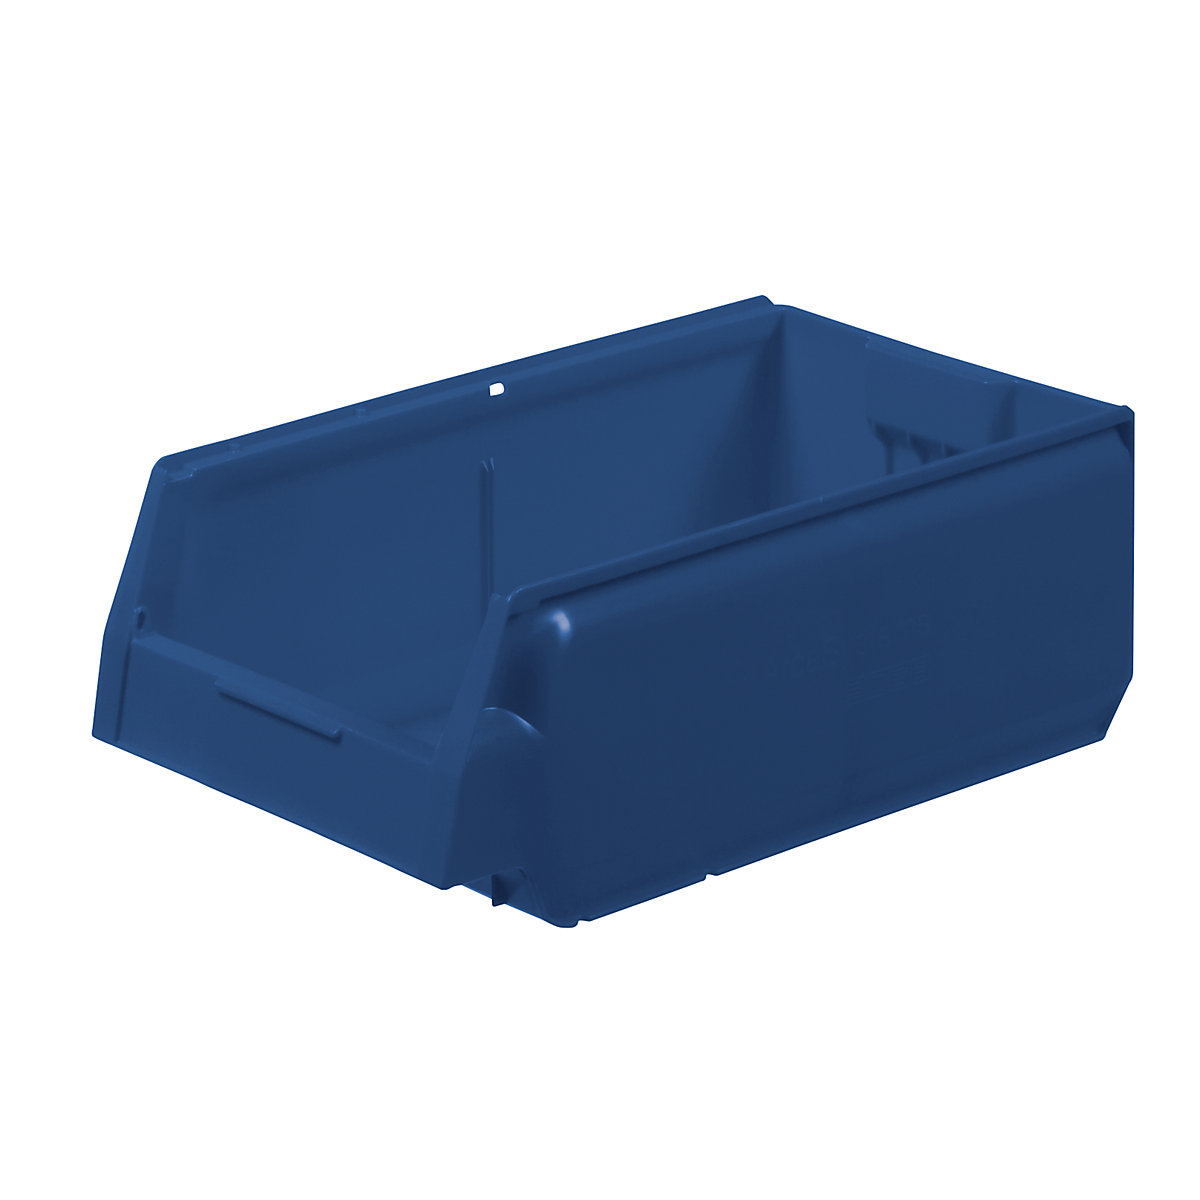 Caixa de armazenagem à vista em polipropileno, CxLxA 400 x 230 x 150 mm, embalagem de 12 unid., azul